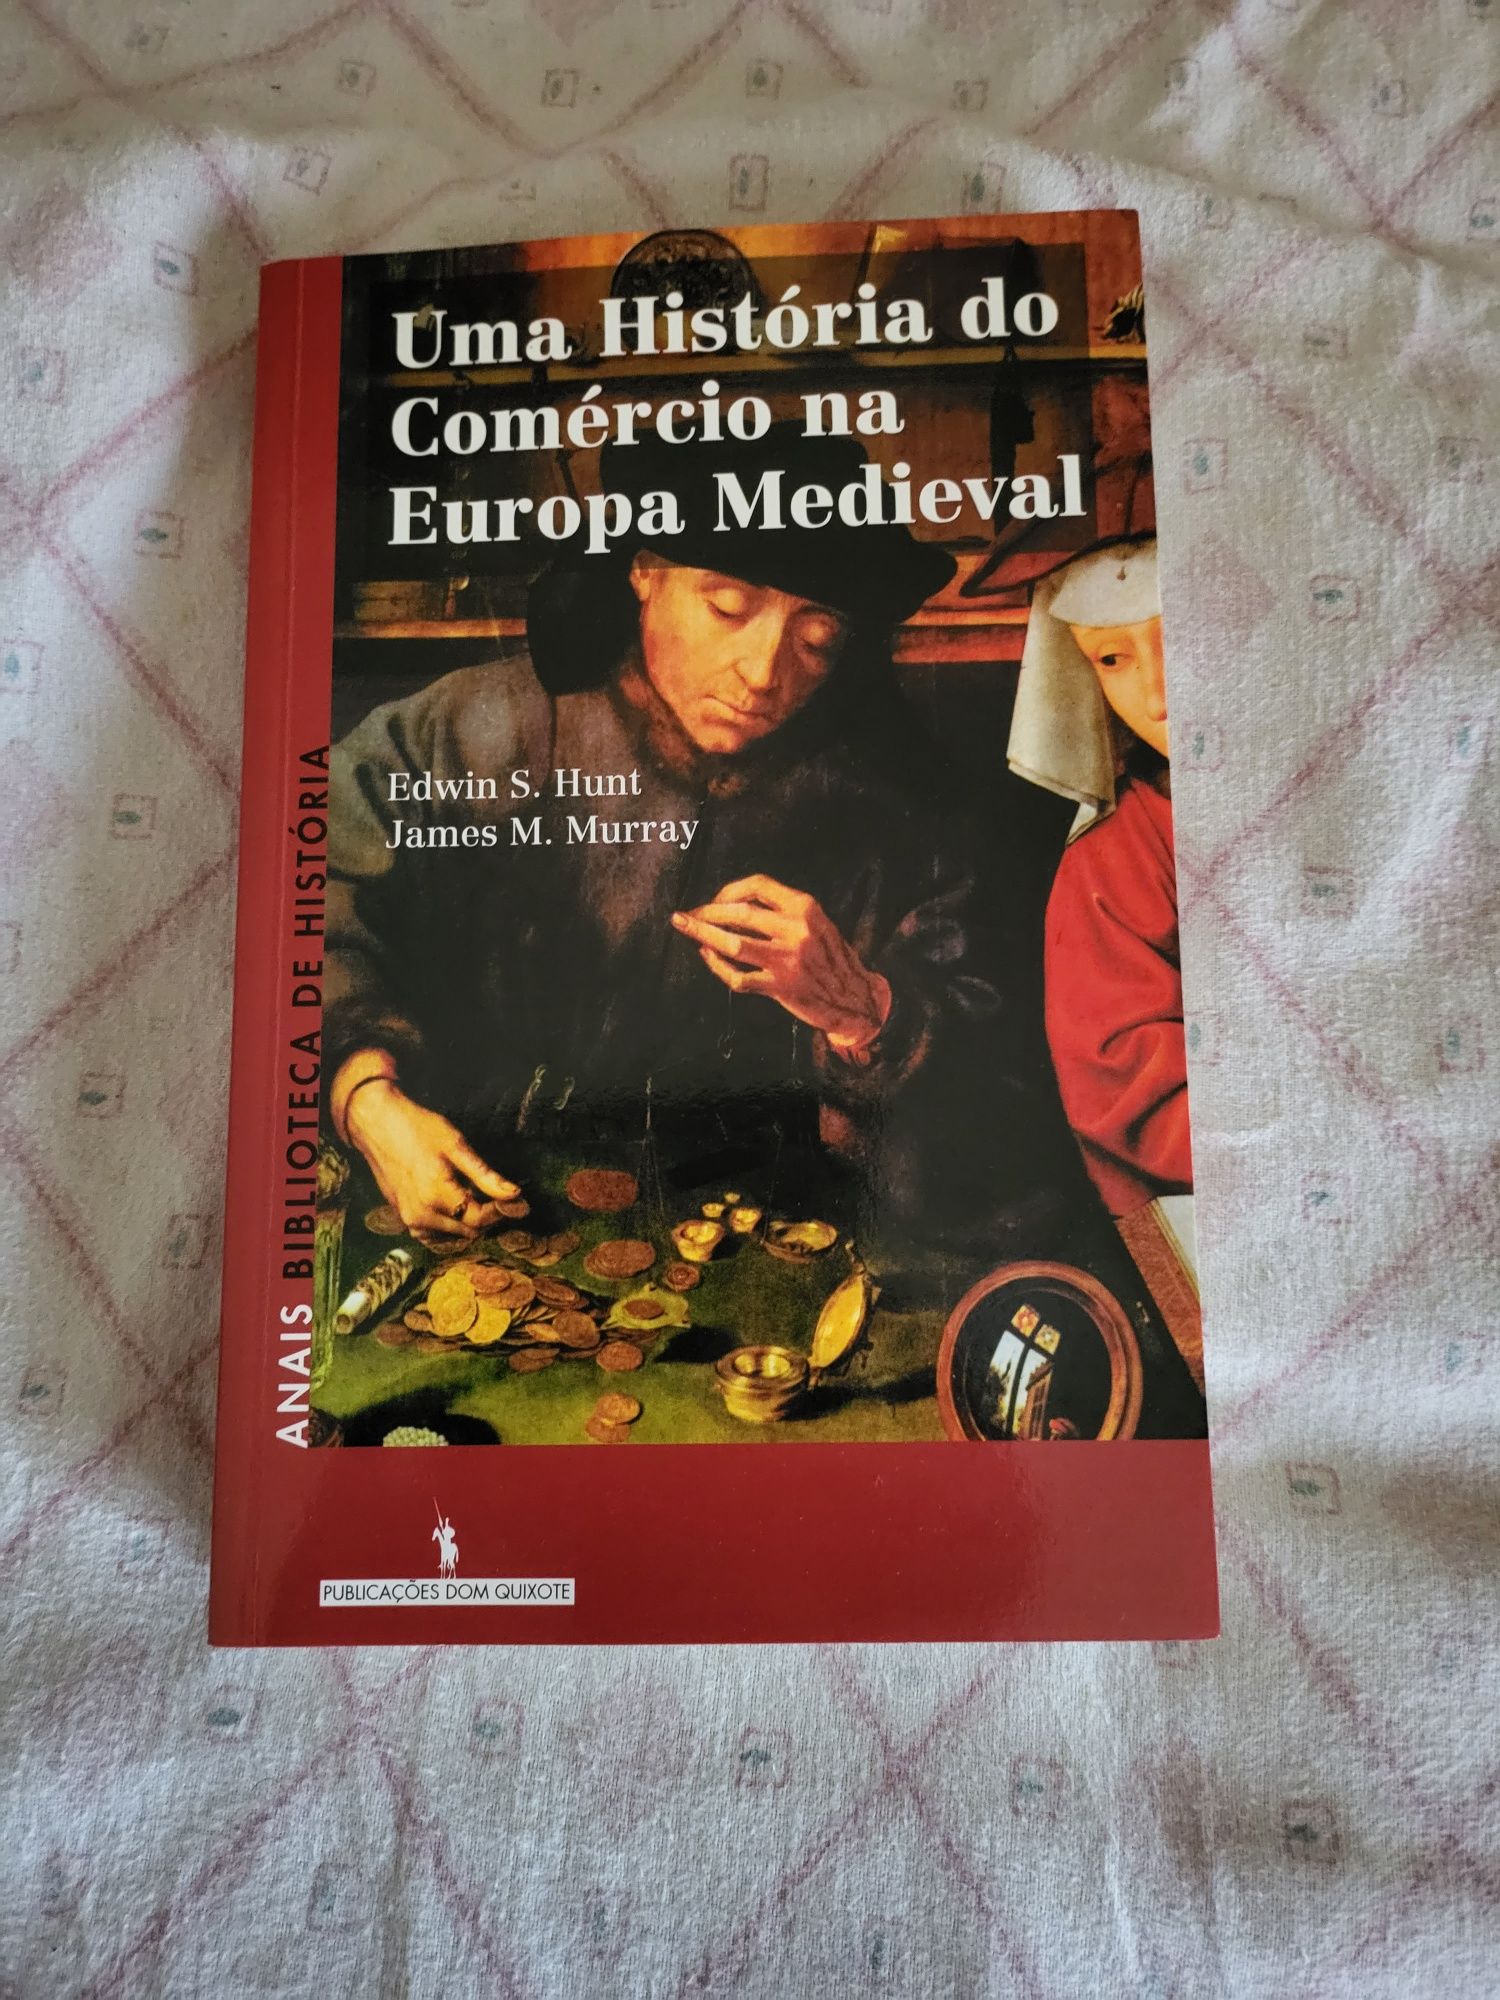 Livro novo com o título "Uma Historia do Comércio na Europa Medieval"